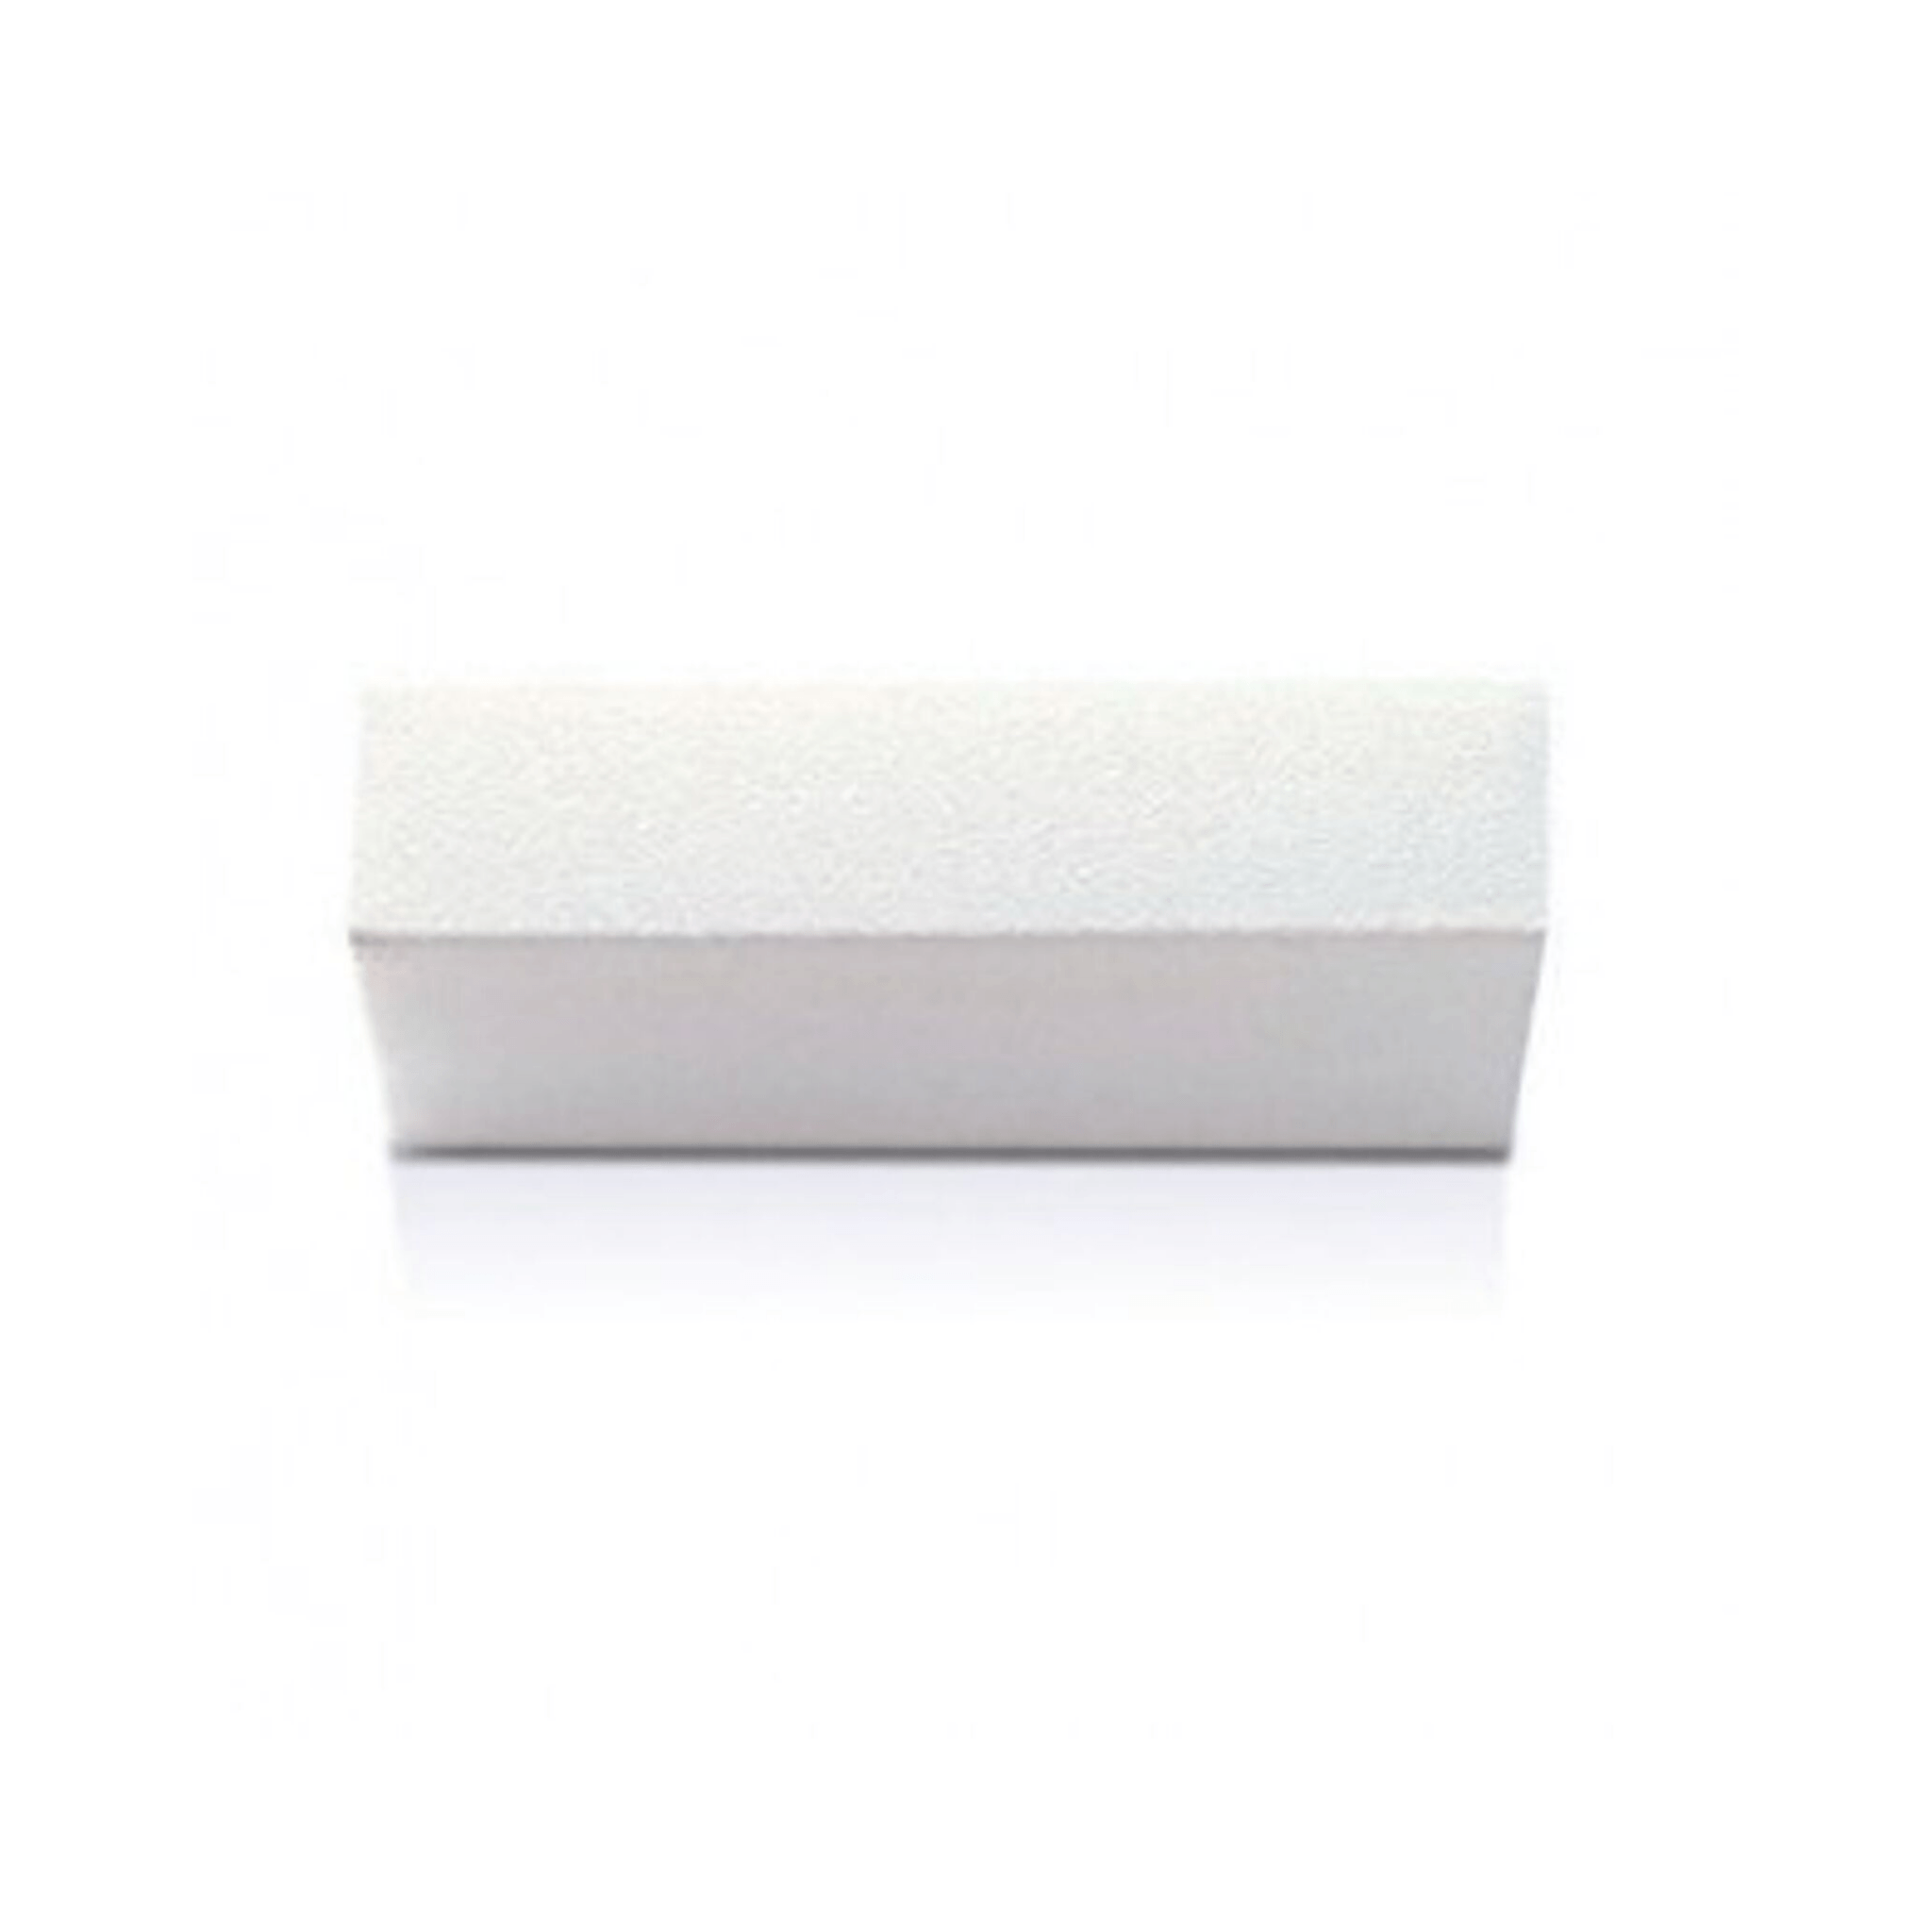 Silkline. Bloc blanc hygiénique - Concept C. Shop